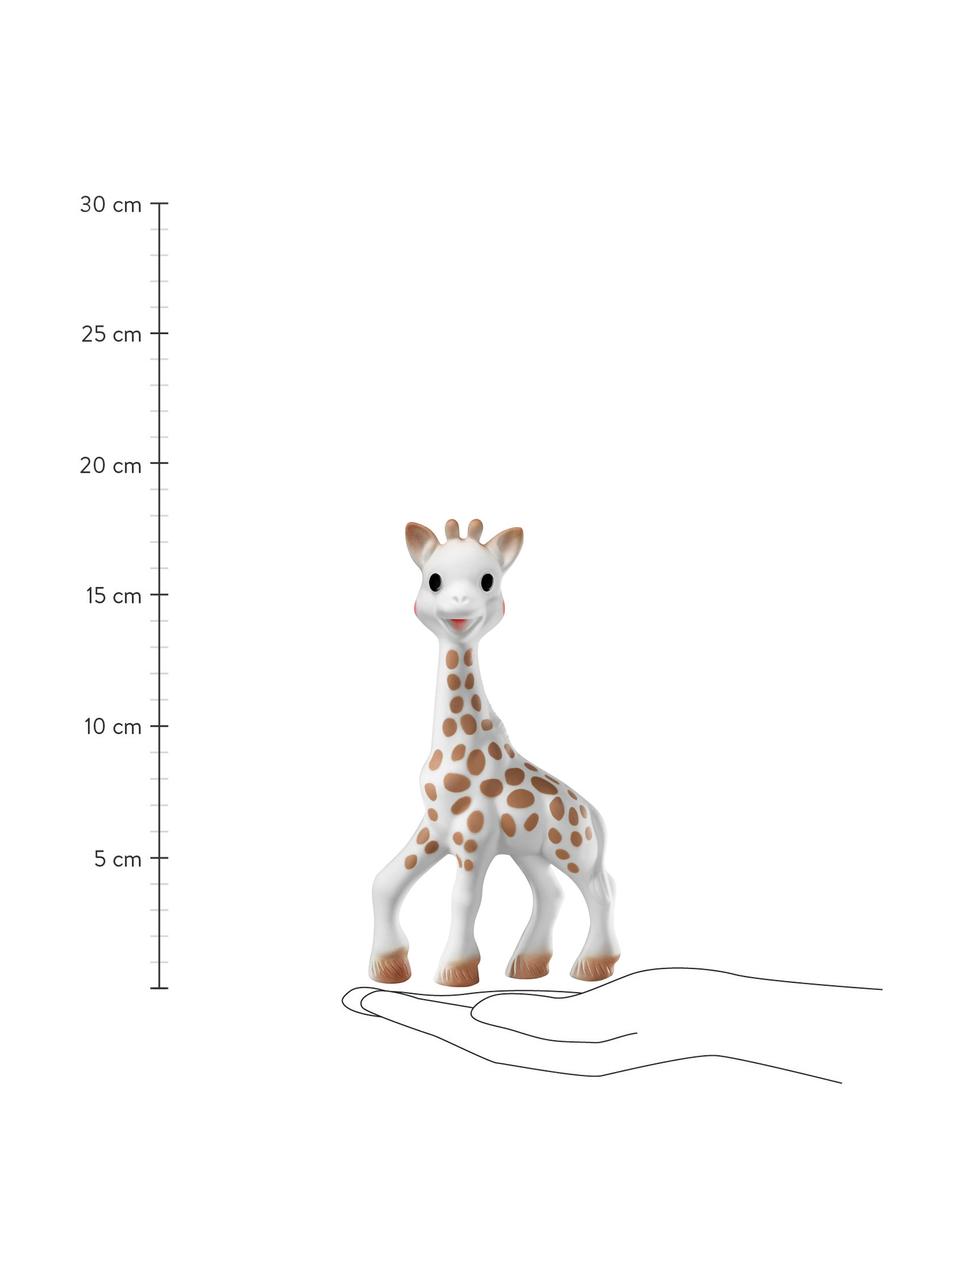 Speelgoed Sophie la girafe, 100% natuurlijk rubber, Wit, bruin, B 10 x H 18 cm